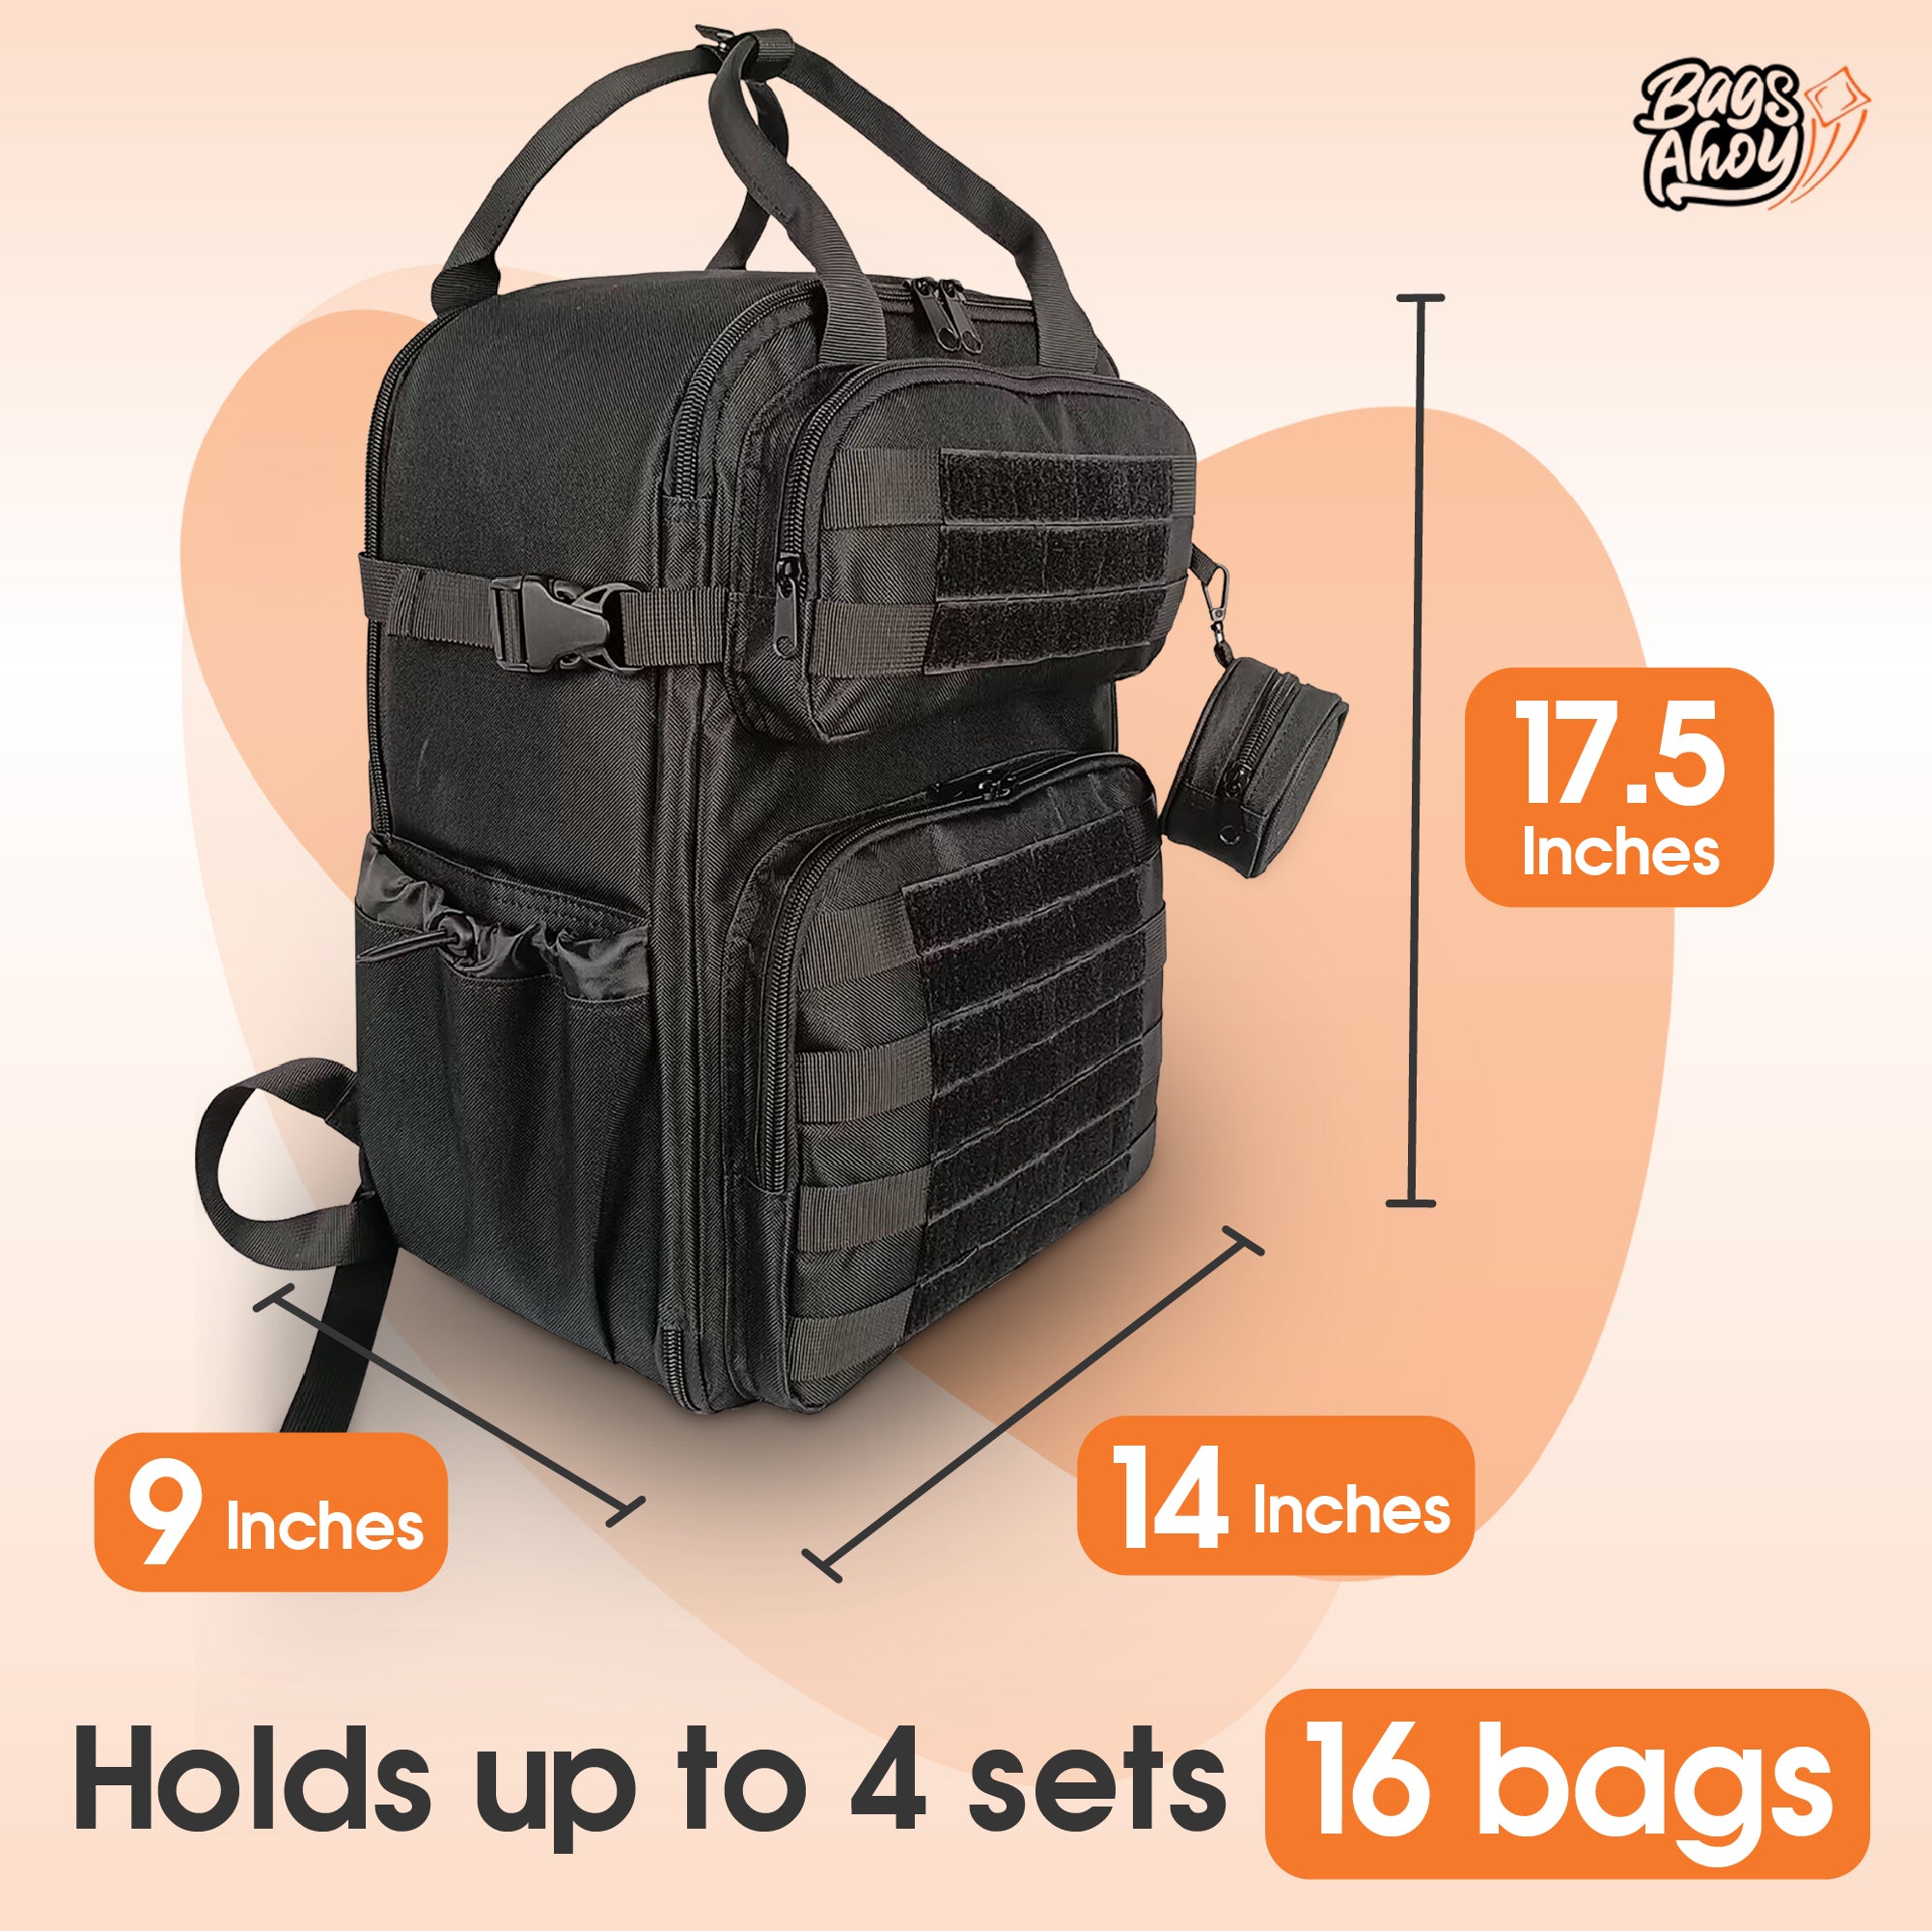 Backpack bags sale: ट्रिप हो या ऑफिस, कहीं भी लेकर जाने के लिए परफेक्ट हैं  ये बैकपैक, आधे से भी कम दाम पर यहां से खरीदें - Fashion AajTak